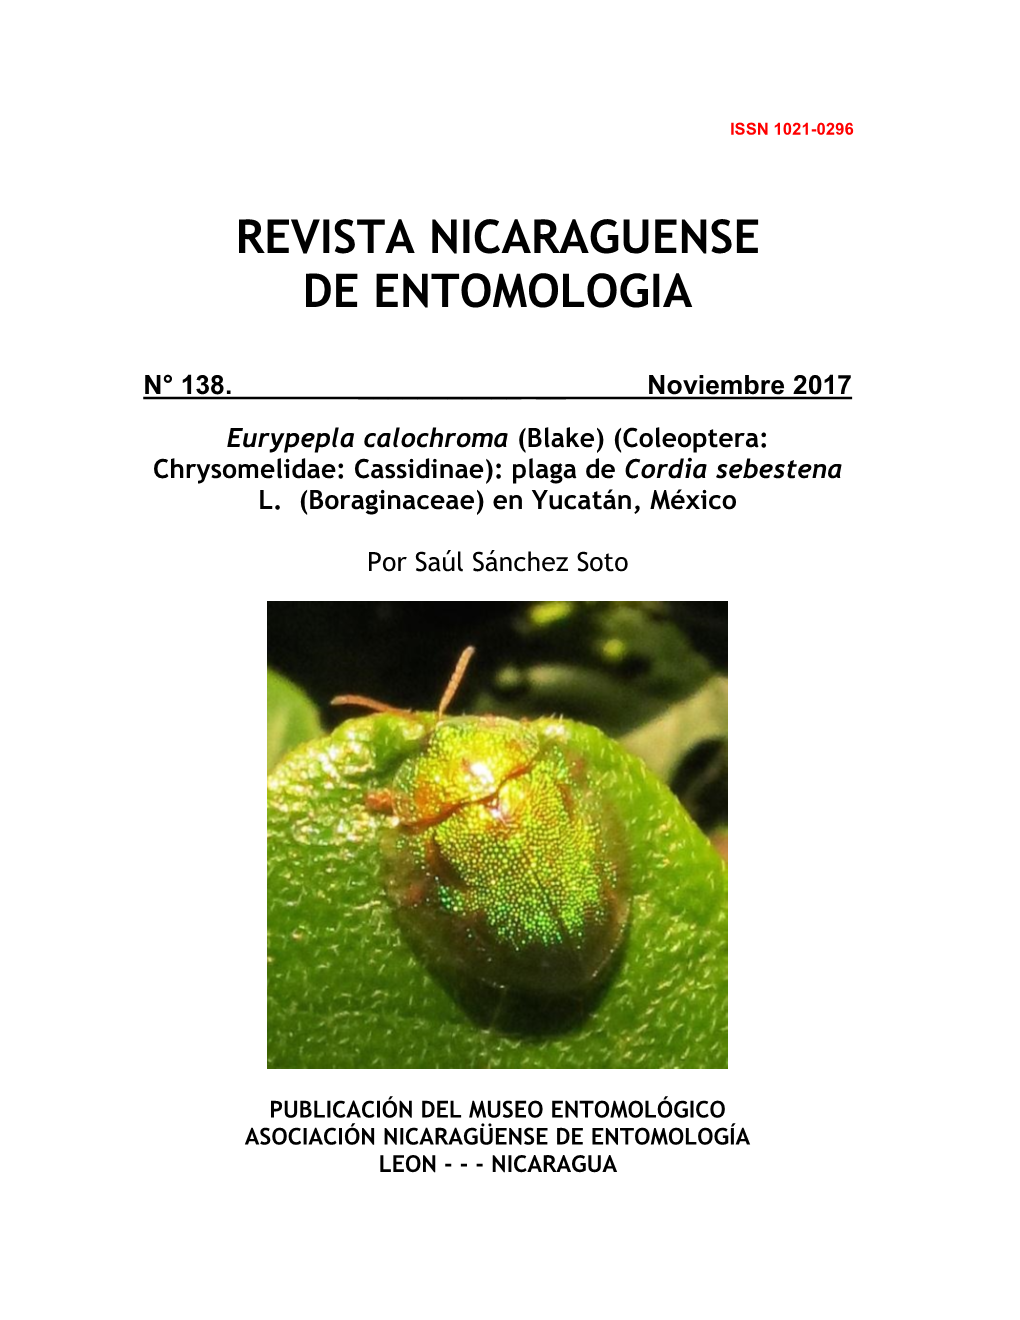 Boraginaceae) En Yucatán, México